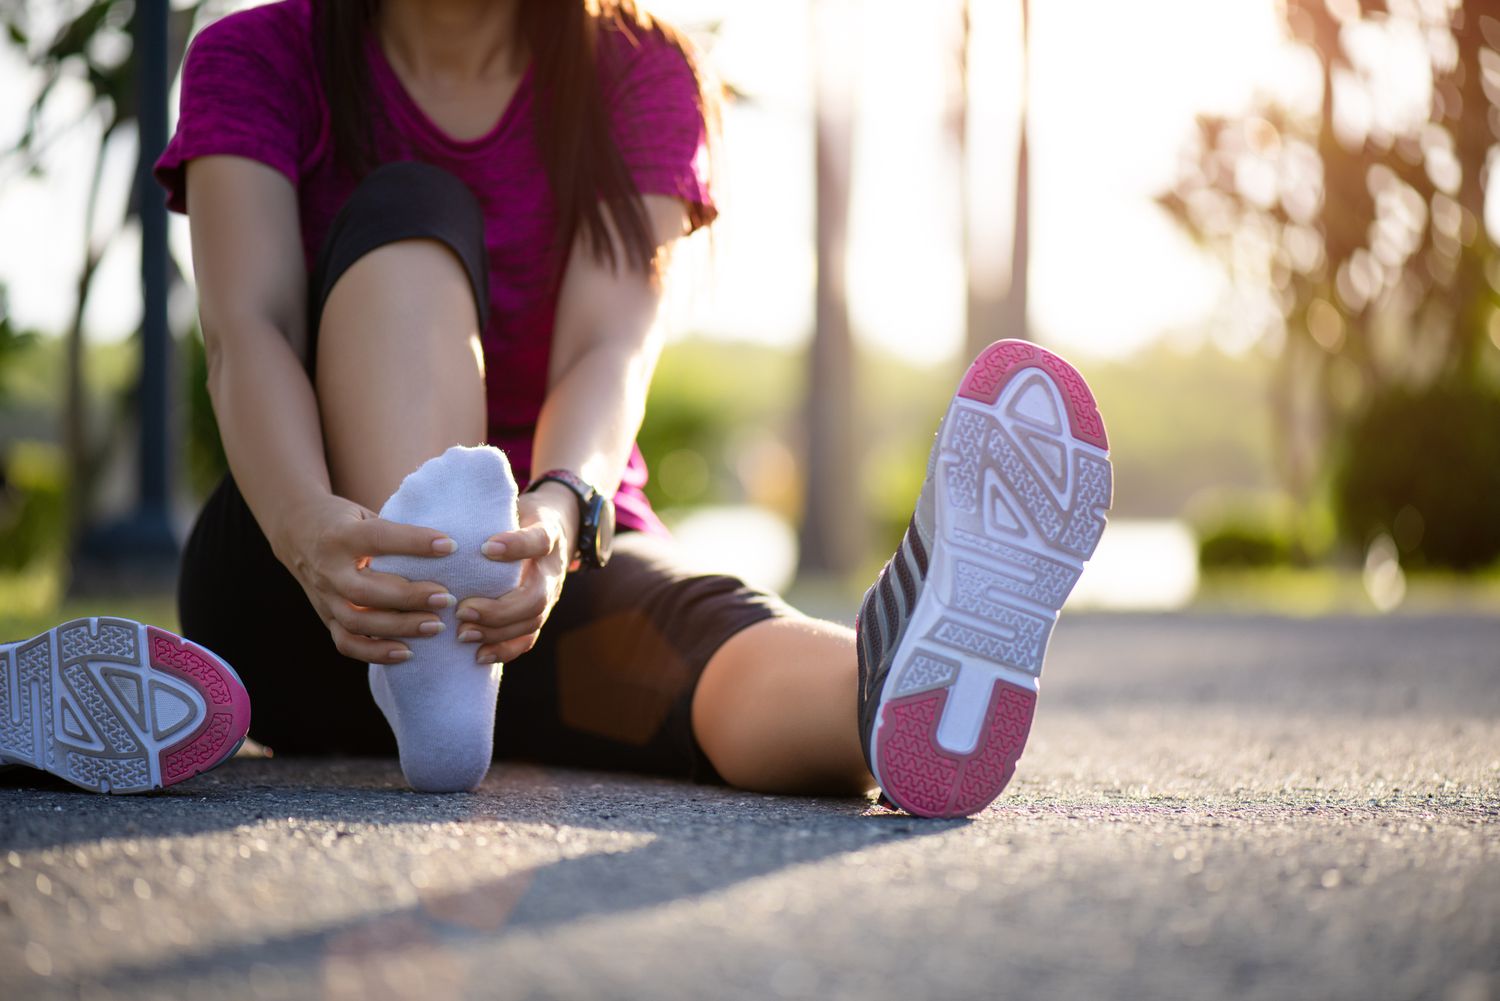 Jonge vrouw die haar pijnlijke voet masseert tijdens het sporten. Running Sport en oefening blessure concept.